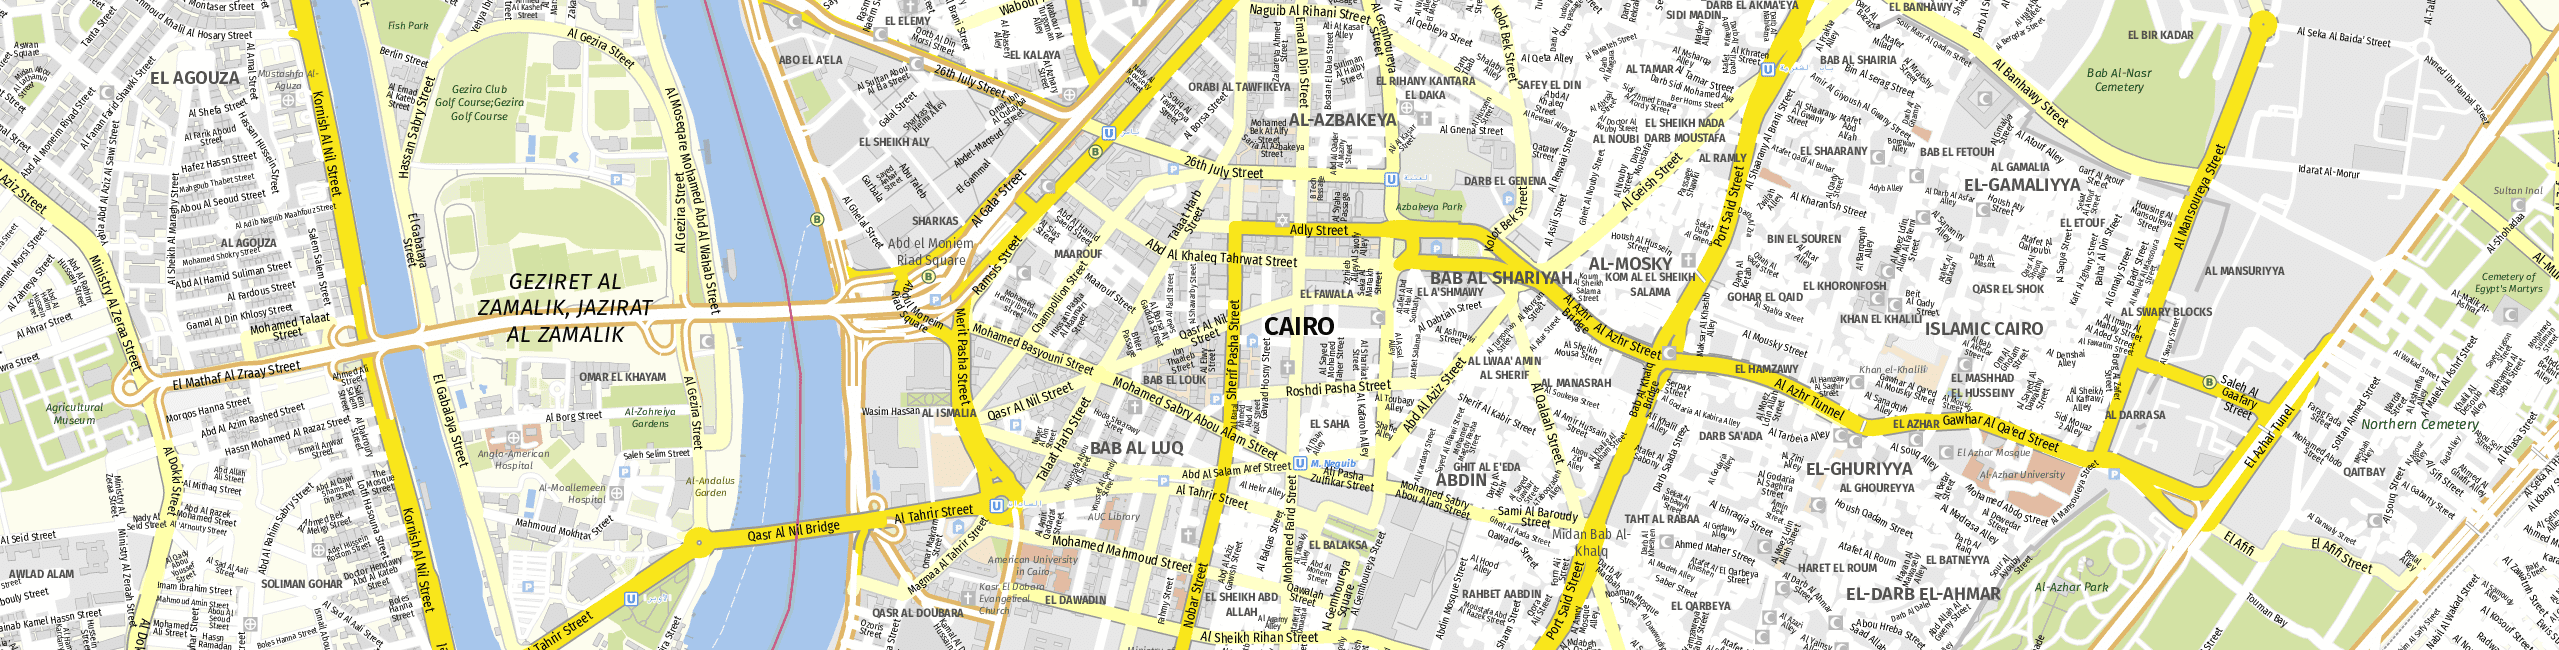 Stadtplan Kairo zum Downloaden.